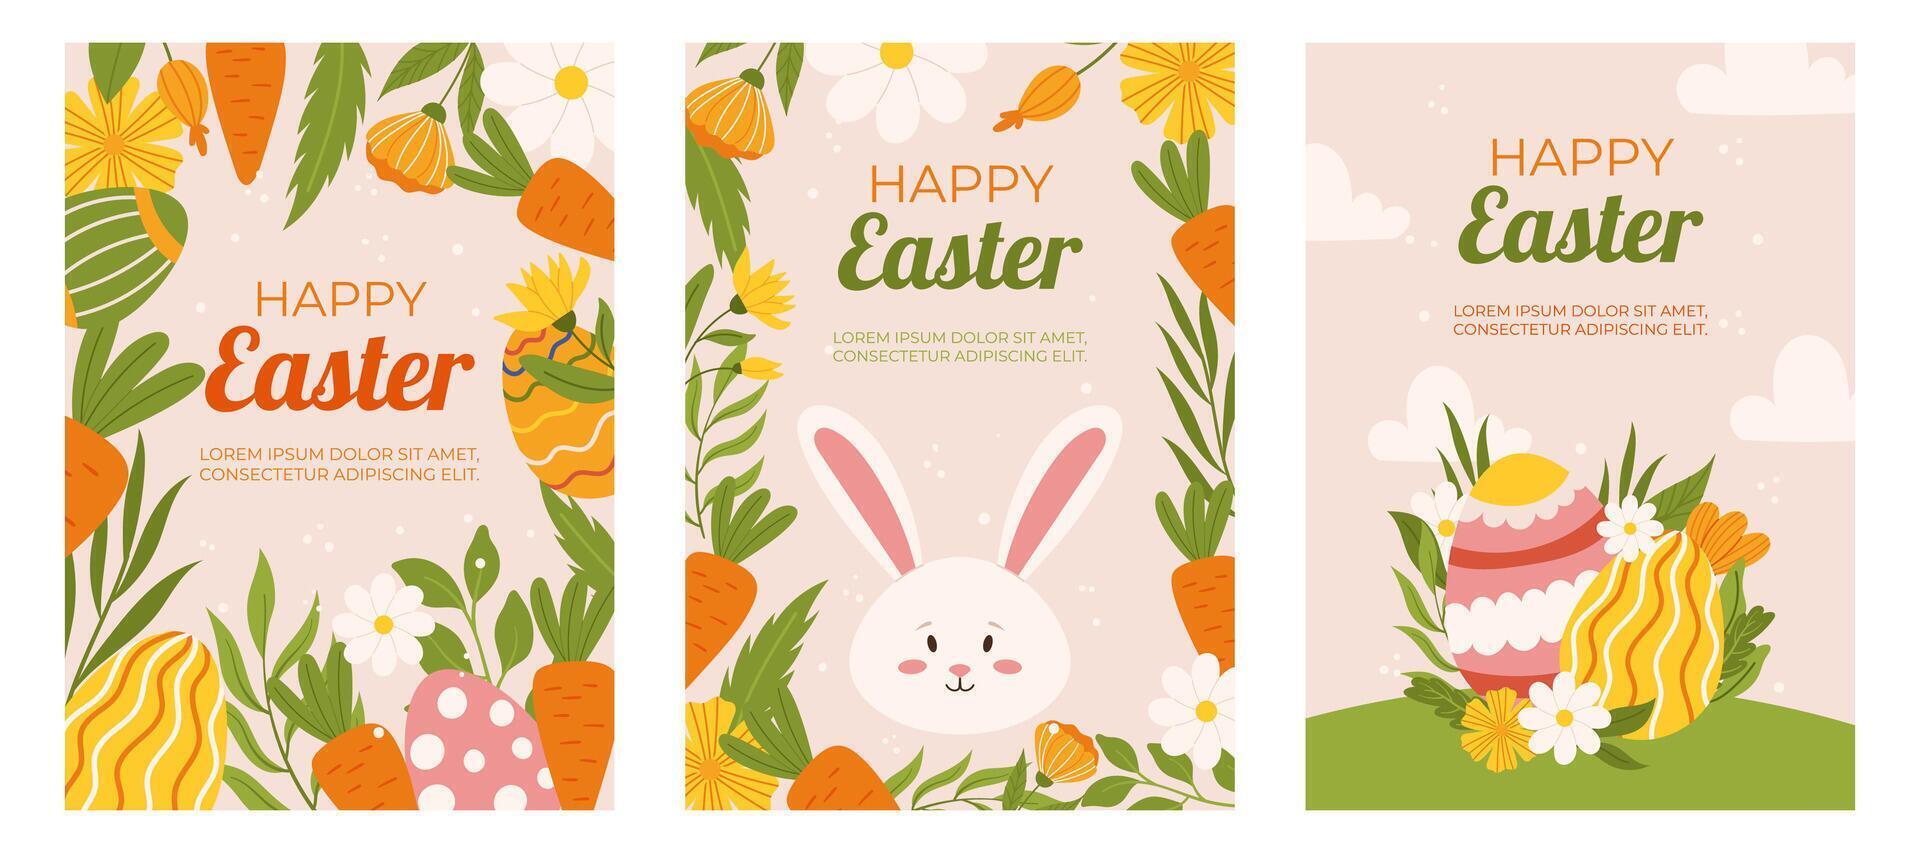 Pascua de Resurrección colección de vertical saludo tarjetas modelo. diseño con flores, pintado huevos, conejito y zanahoria. mano dibujado plano vector ilustración